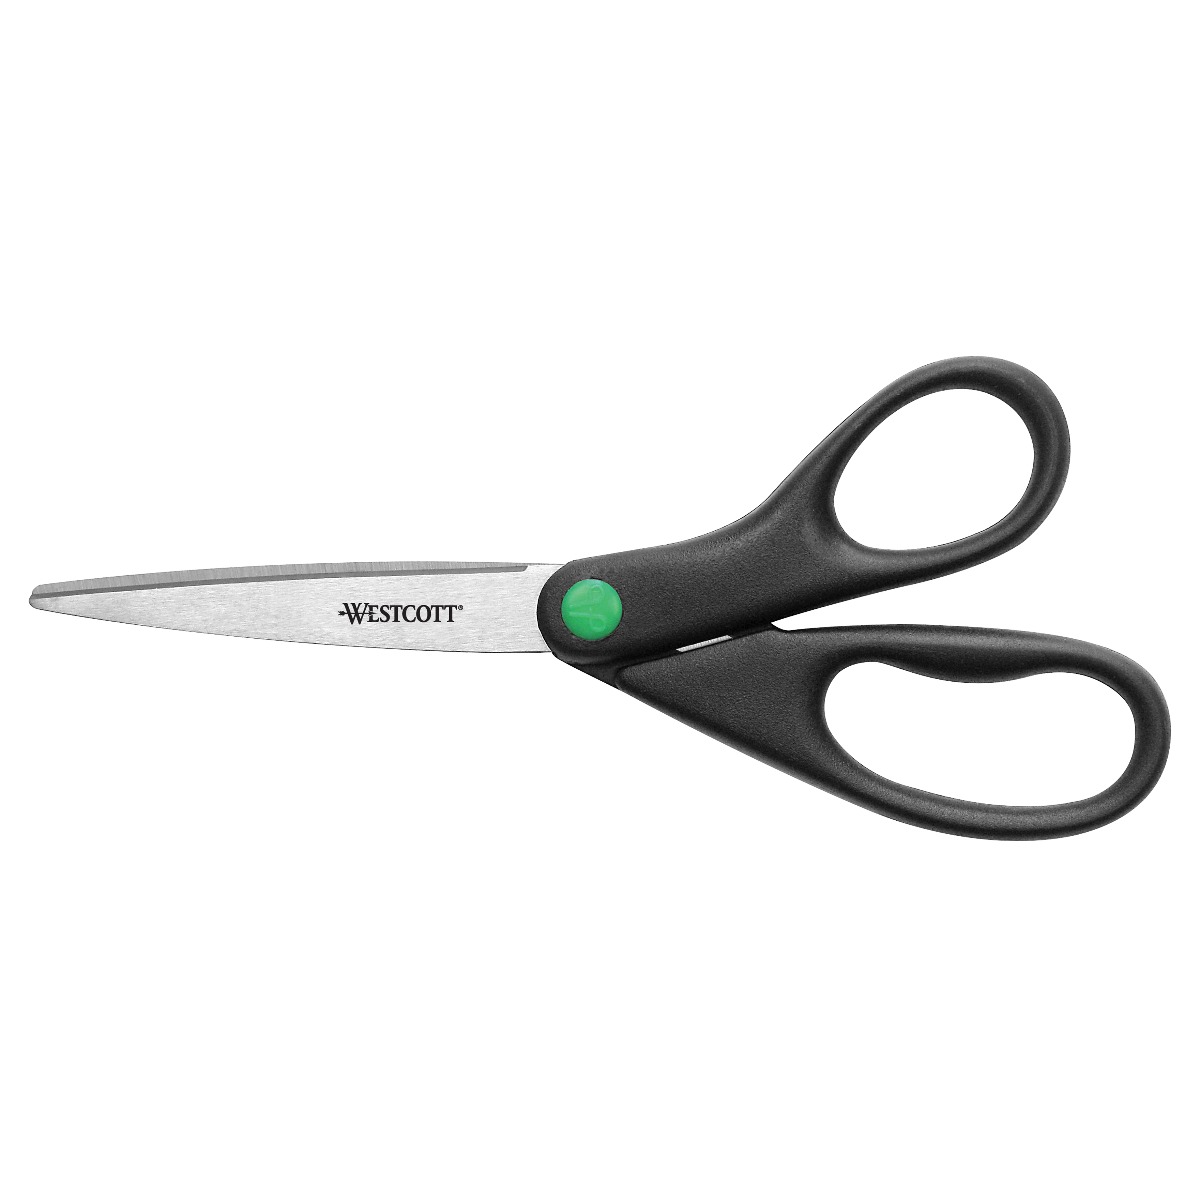 Westcott Scissors, Stainless Steel